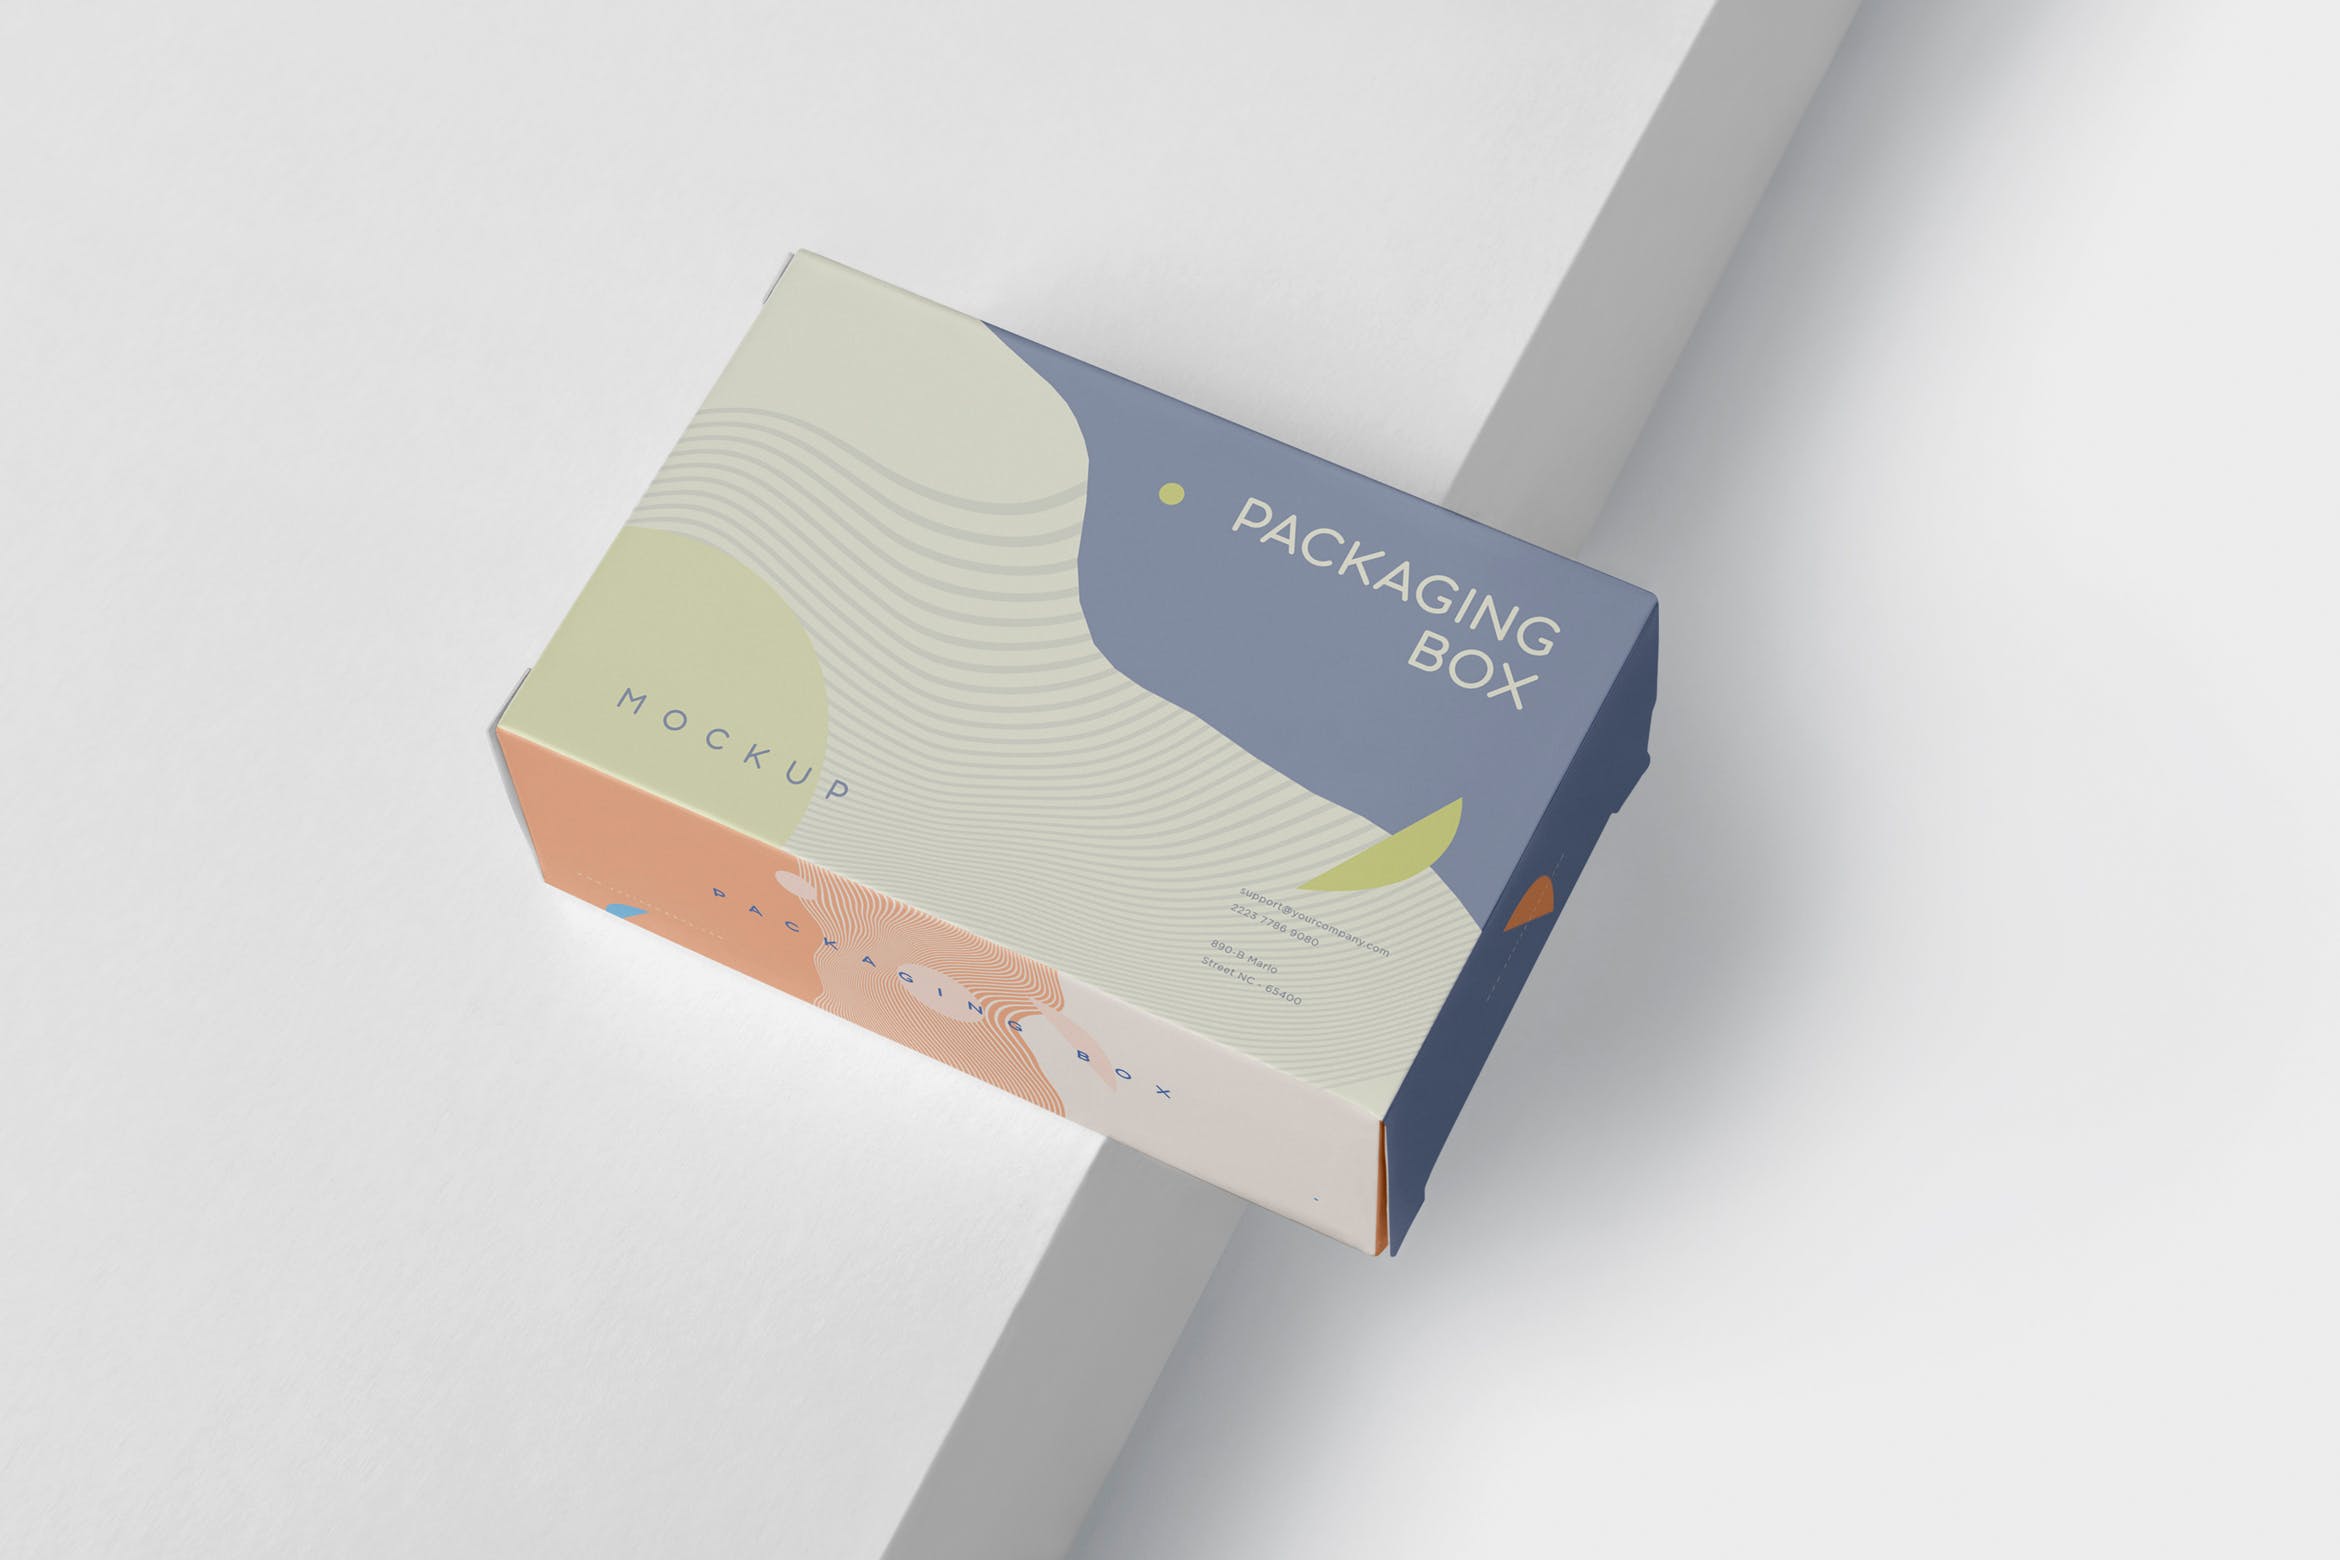 扁平矩形产品包装盒效果图大洋岛精选 Package Box Mockup – Slim Rectangle Shape插图